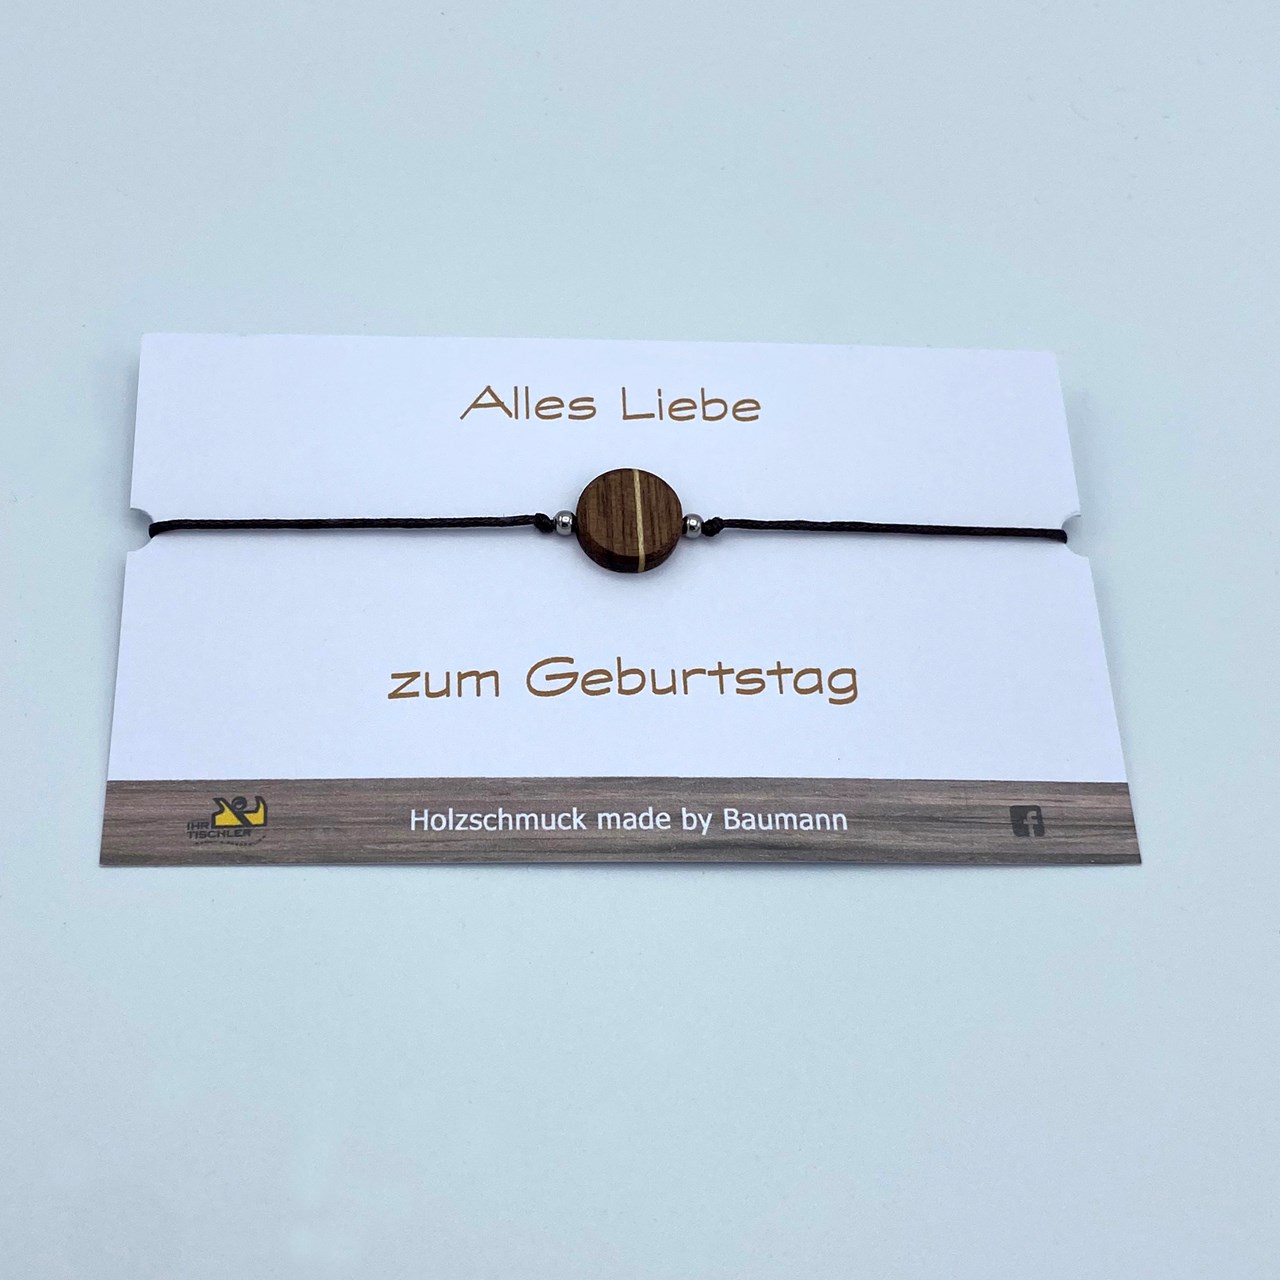 Holzschmuck & Holzhandtaschen made by Baumann Produkt-Beispiele Armband zart + Holzelement (Art.Nr. 250)